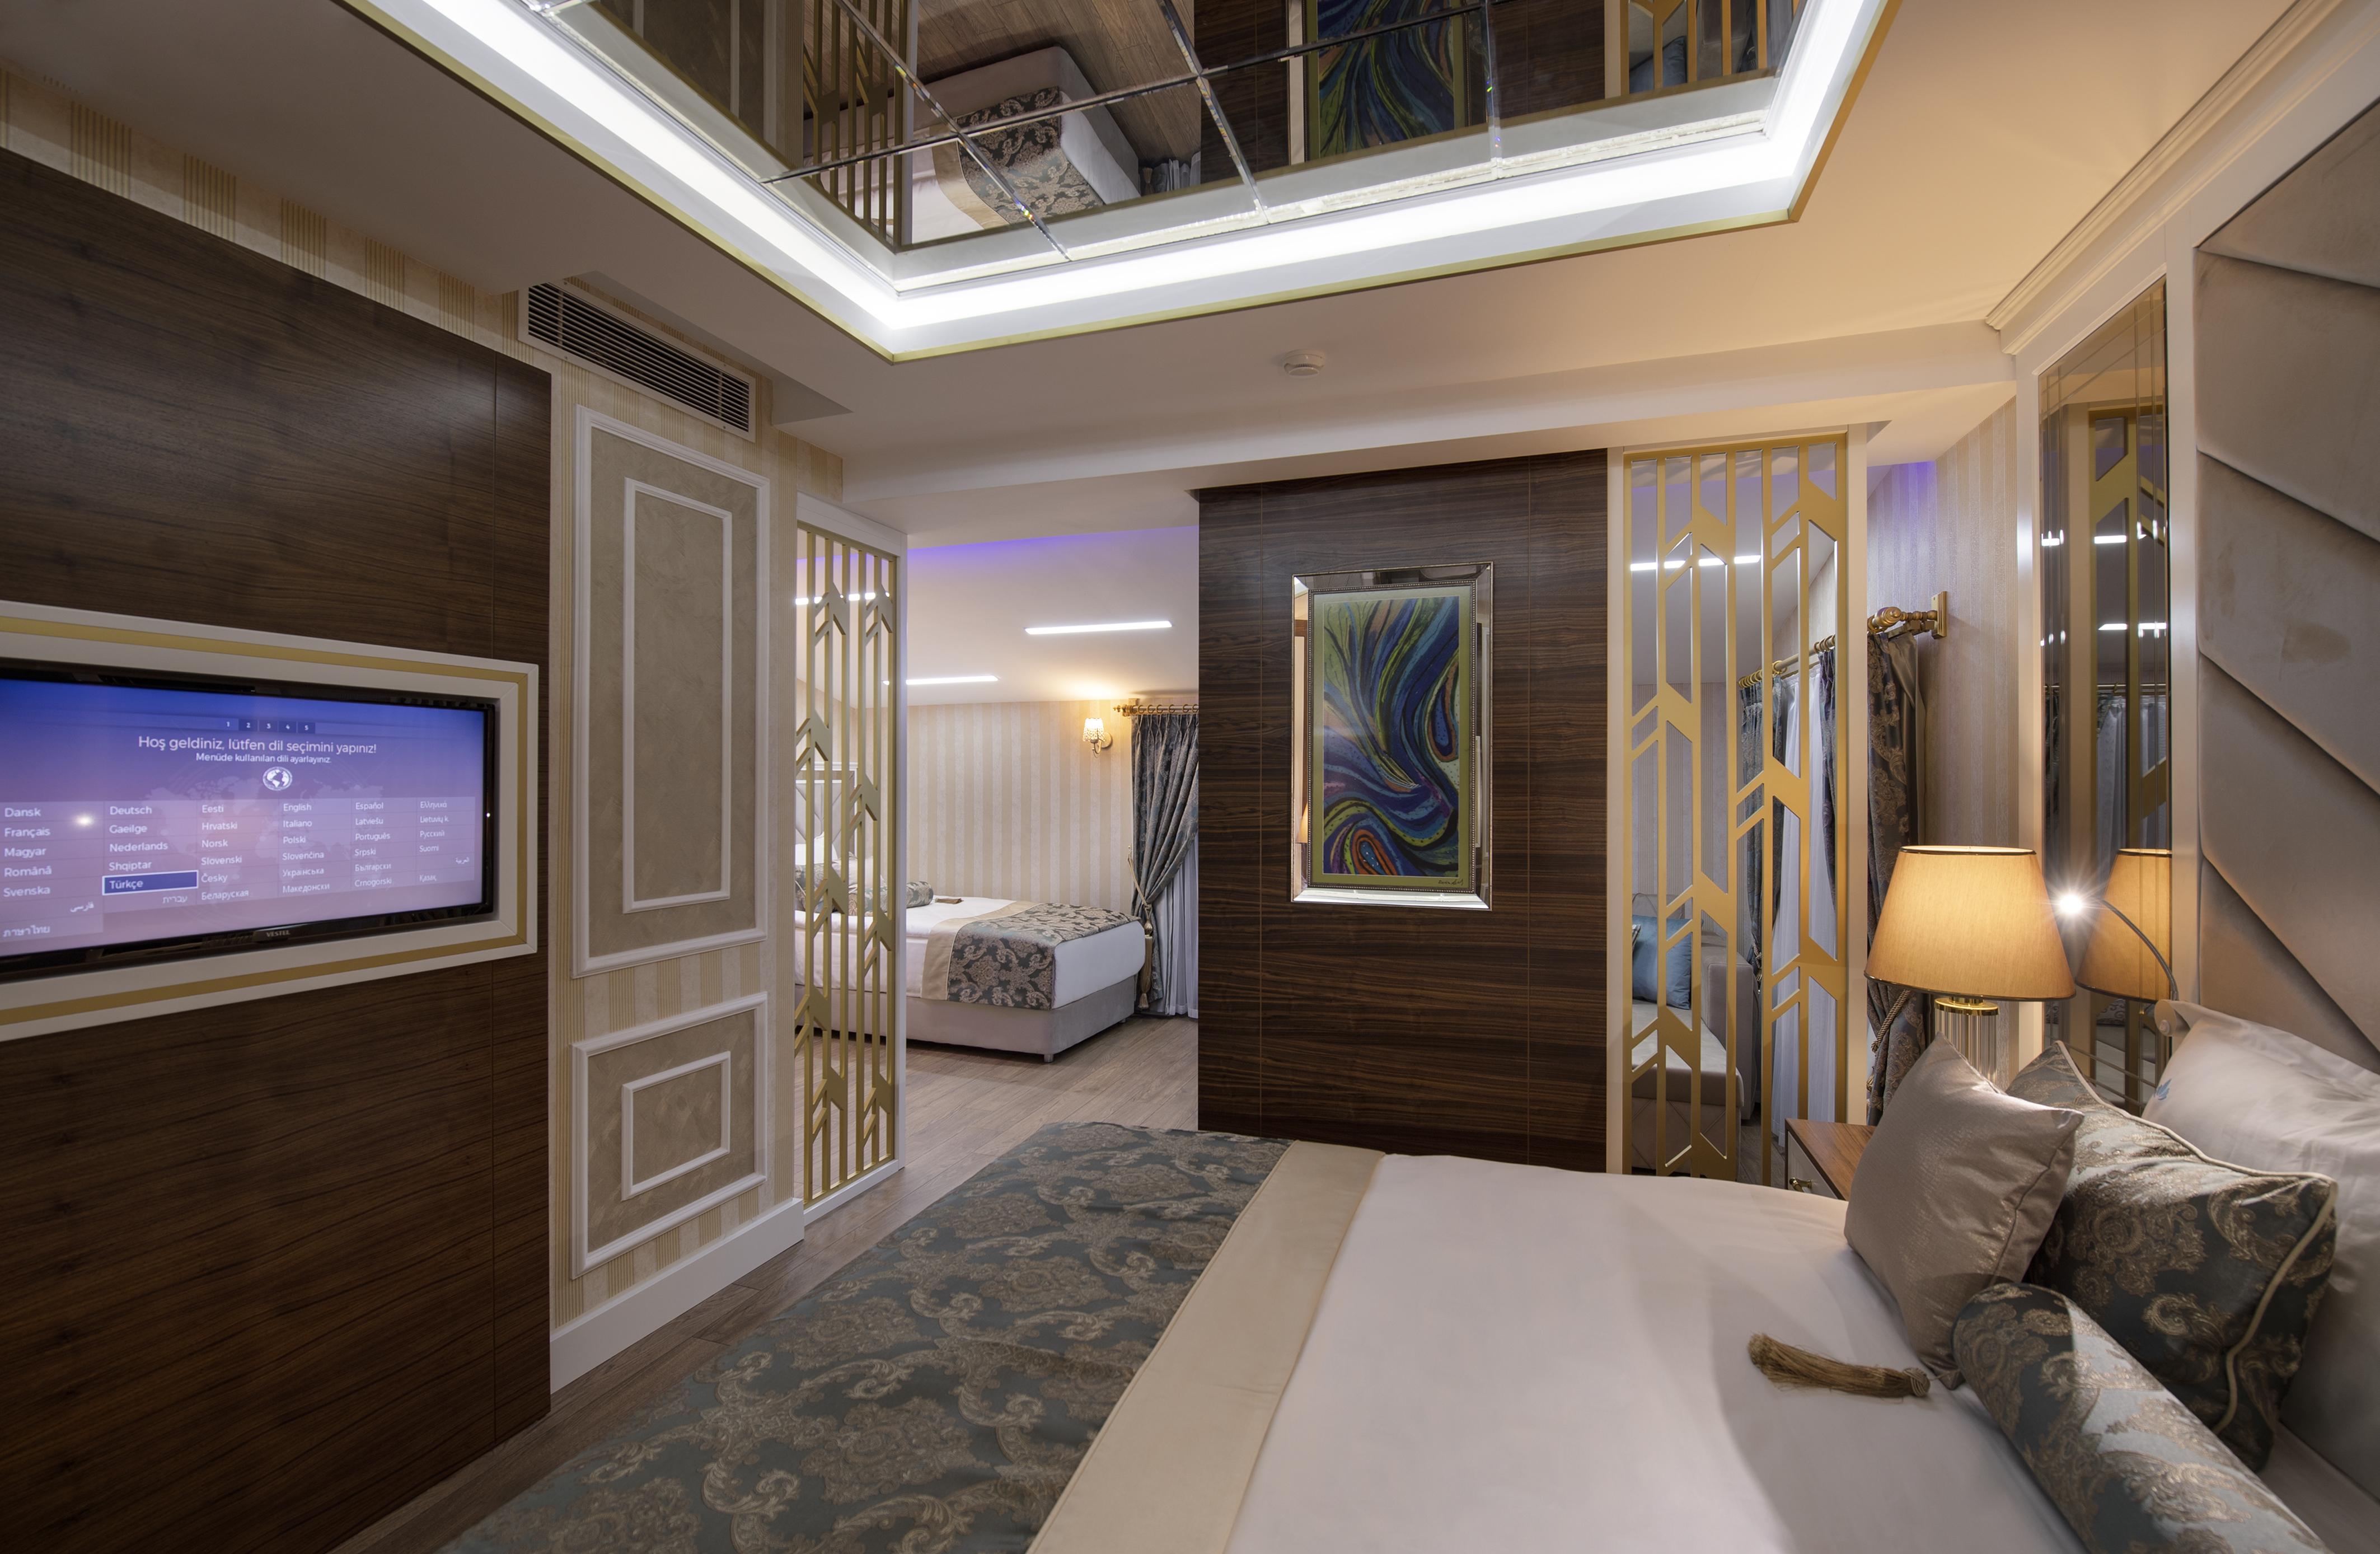 Elysium Green Suites Antalya Exteriör bild